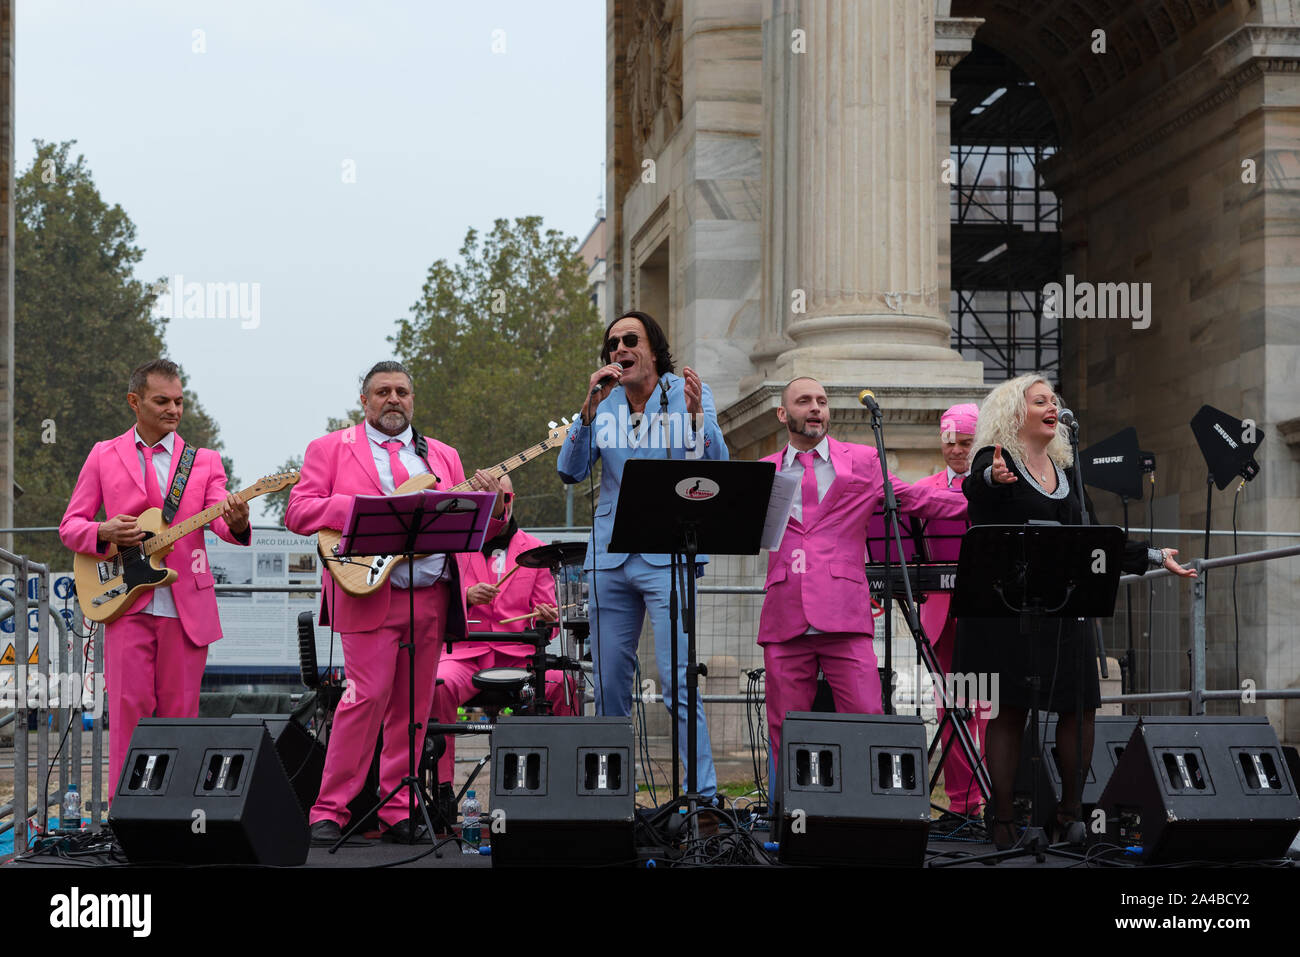 MILAN, ITALIE - 13 octobre 2019 : Le 'I Cormorani' musical groupe accueille les coureurs à l'arrivée pour fêter le deejay dix, un événement organisé en cours d'exécution Banque D'Images